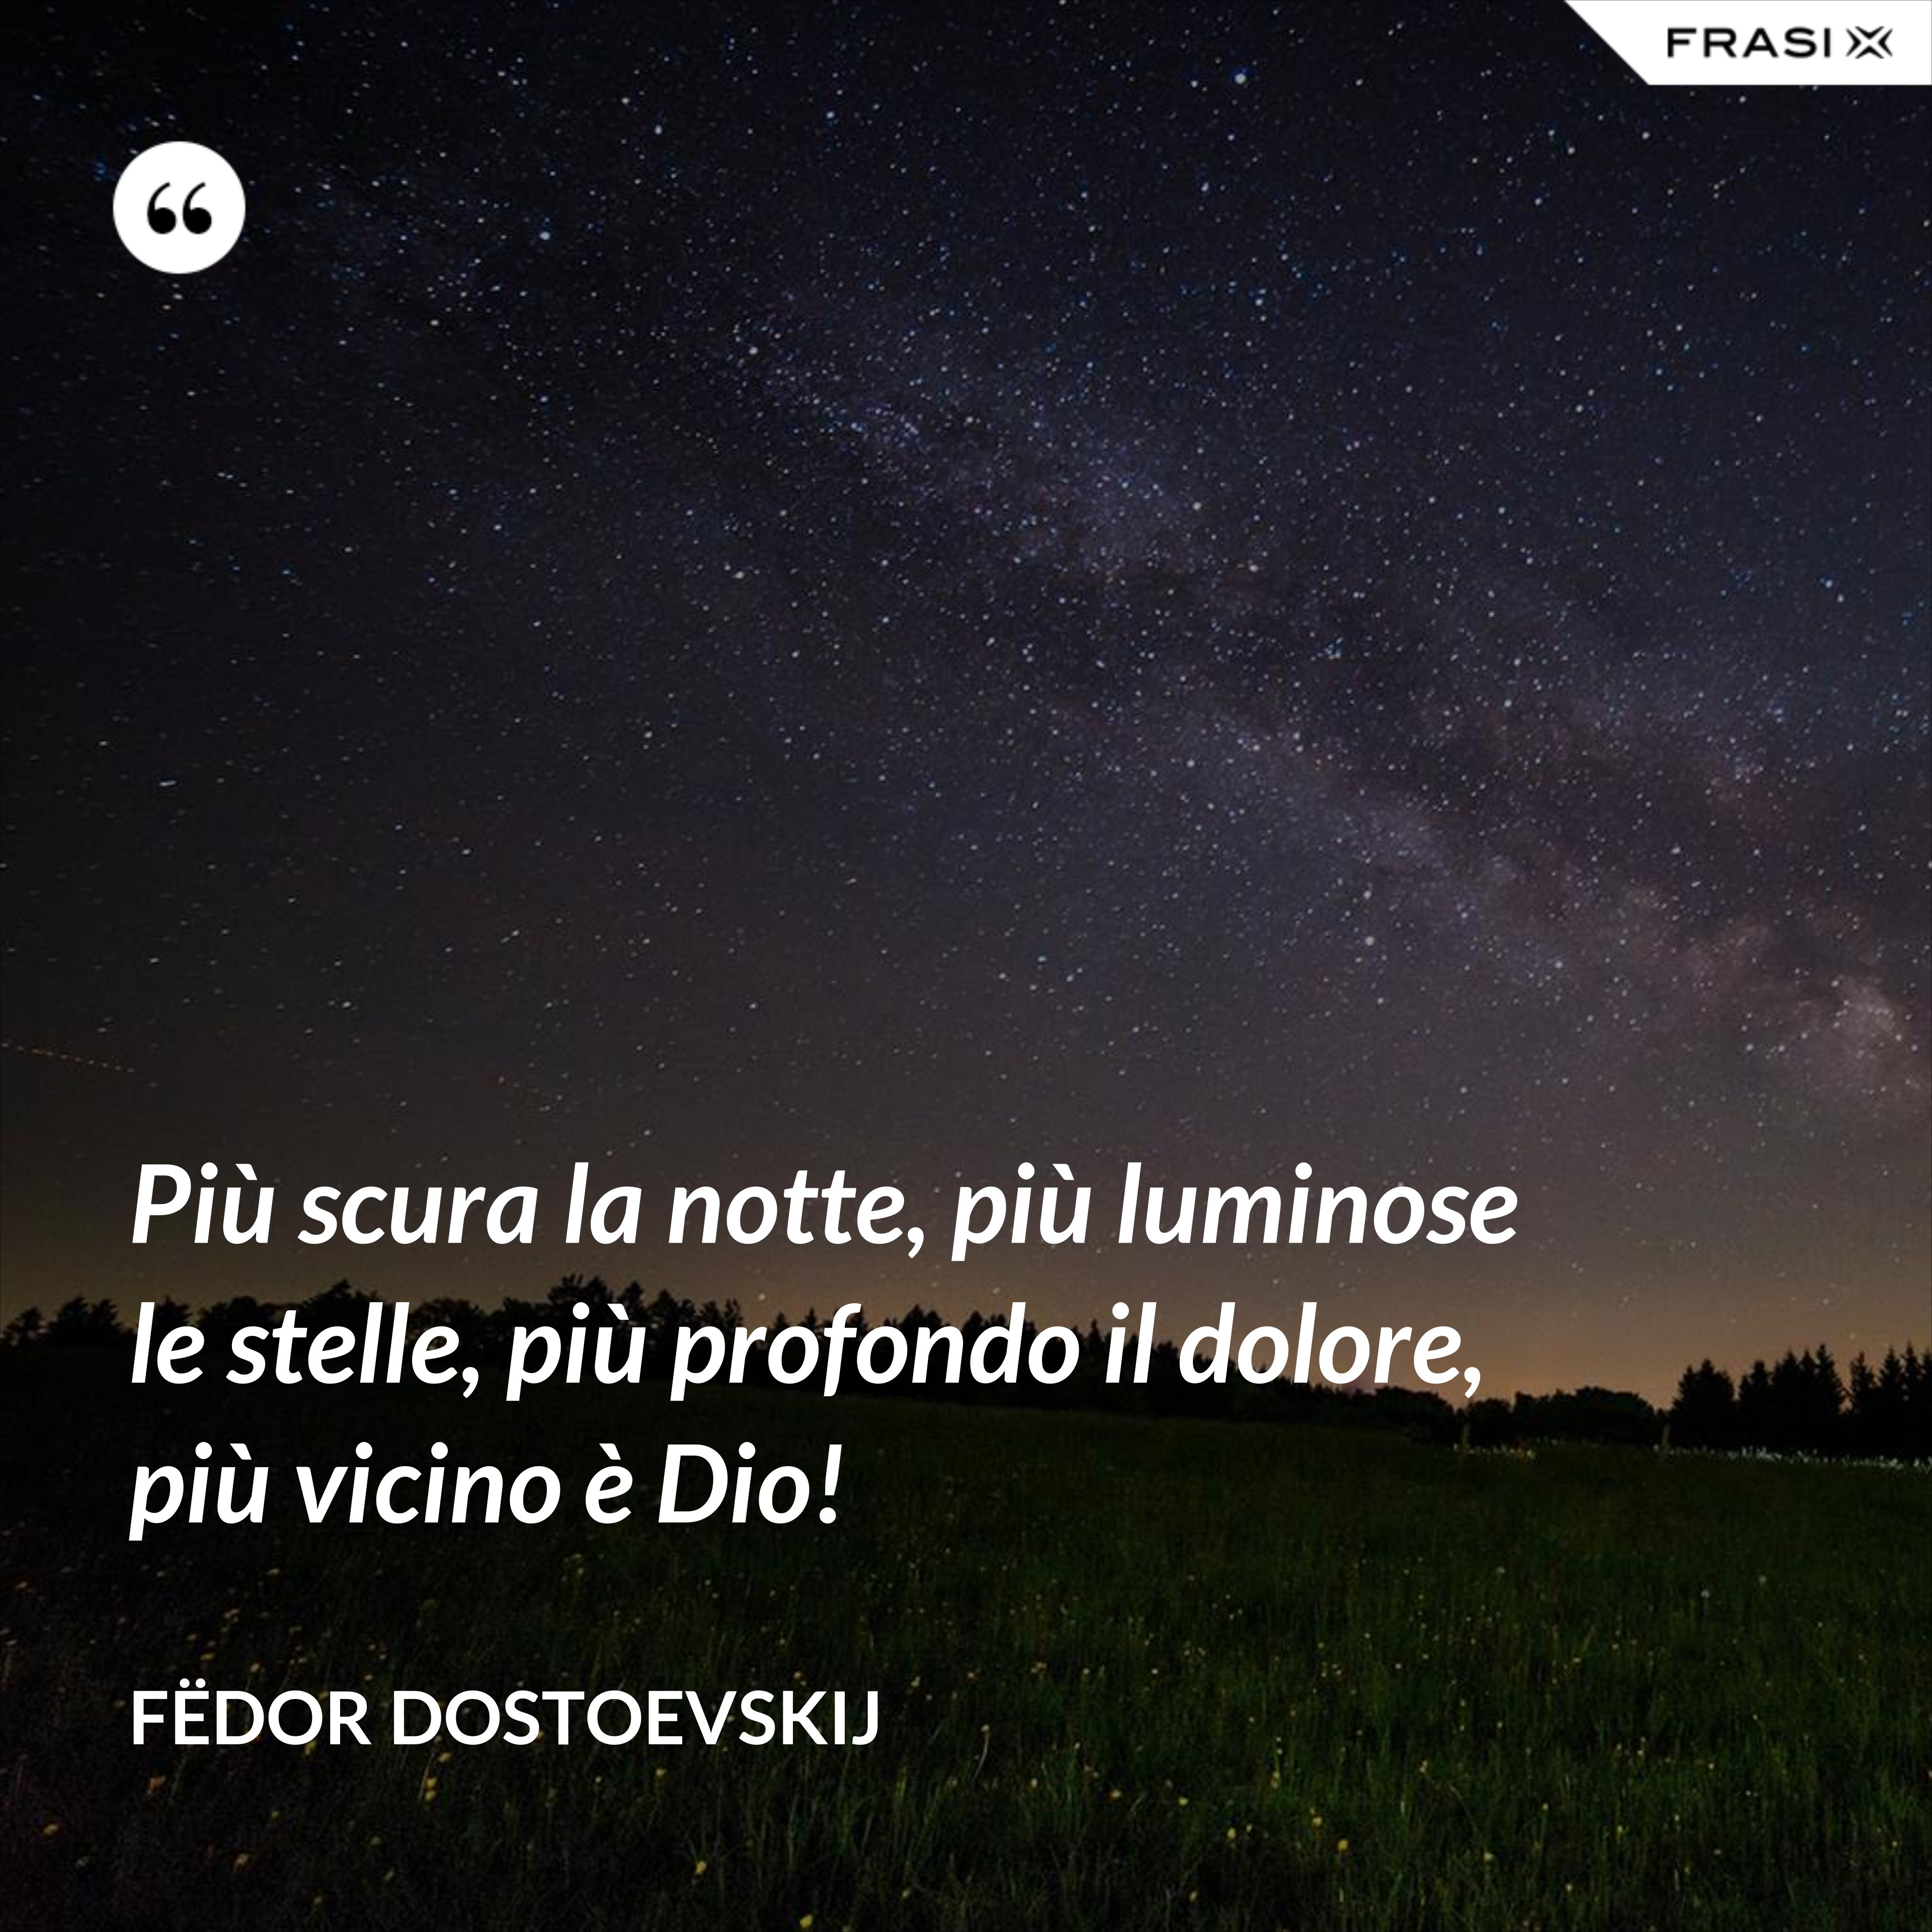 Più scura la notte, più luminose le stelle, più profondo il dolore, più vicino è Dio! - Fëdor Dostoevskij